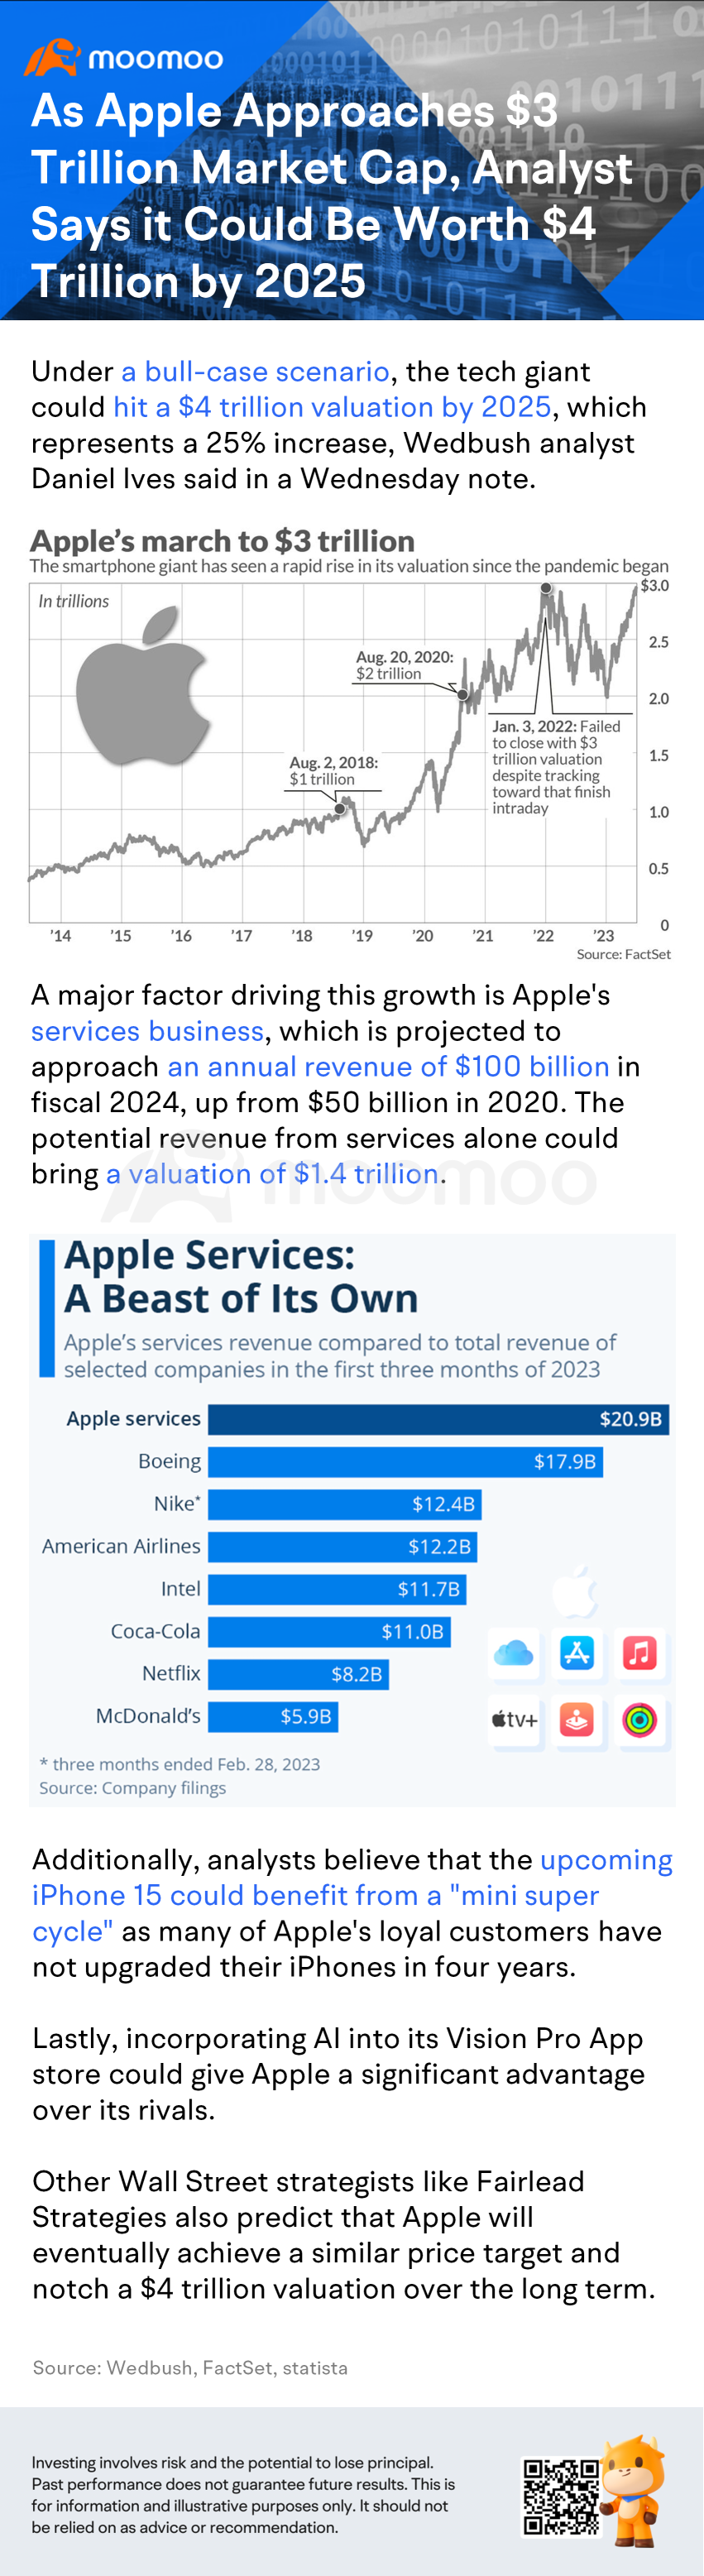 アップルが時価総額3兆ドルに迫るにつれて、アナリストは2025年までに時価総額4兆ドルになる可能性があると言っています。